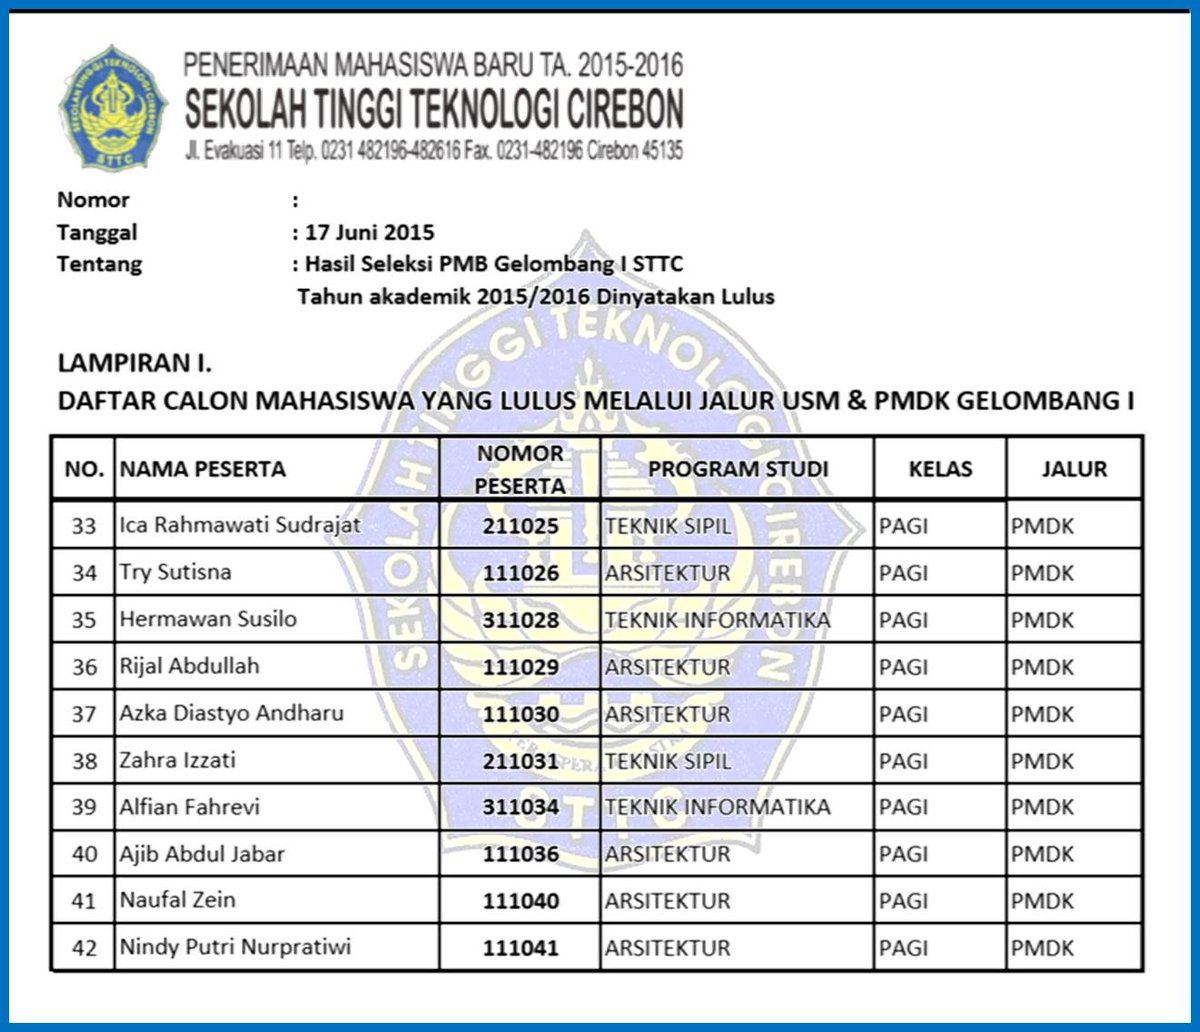 Detail Sekolah Tinggi Teknologi Cirebon Nomer 29